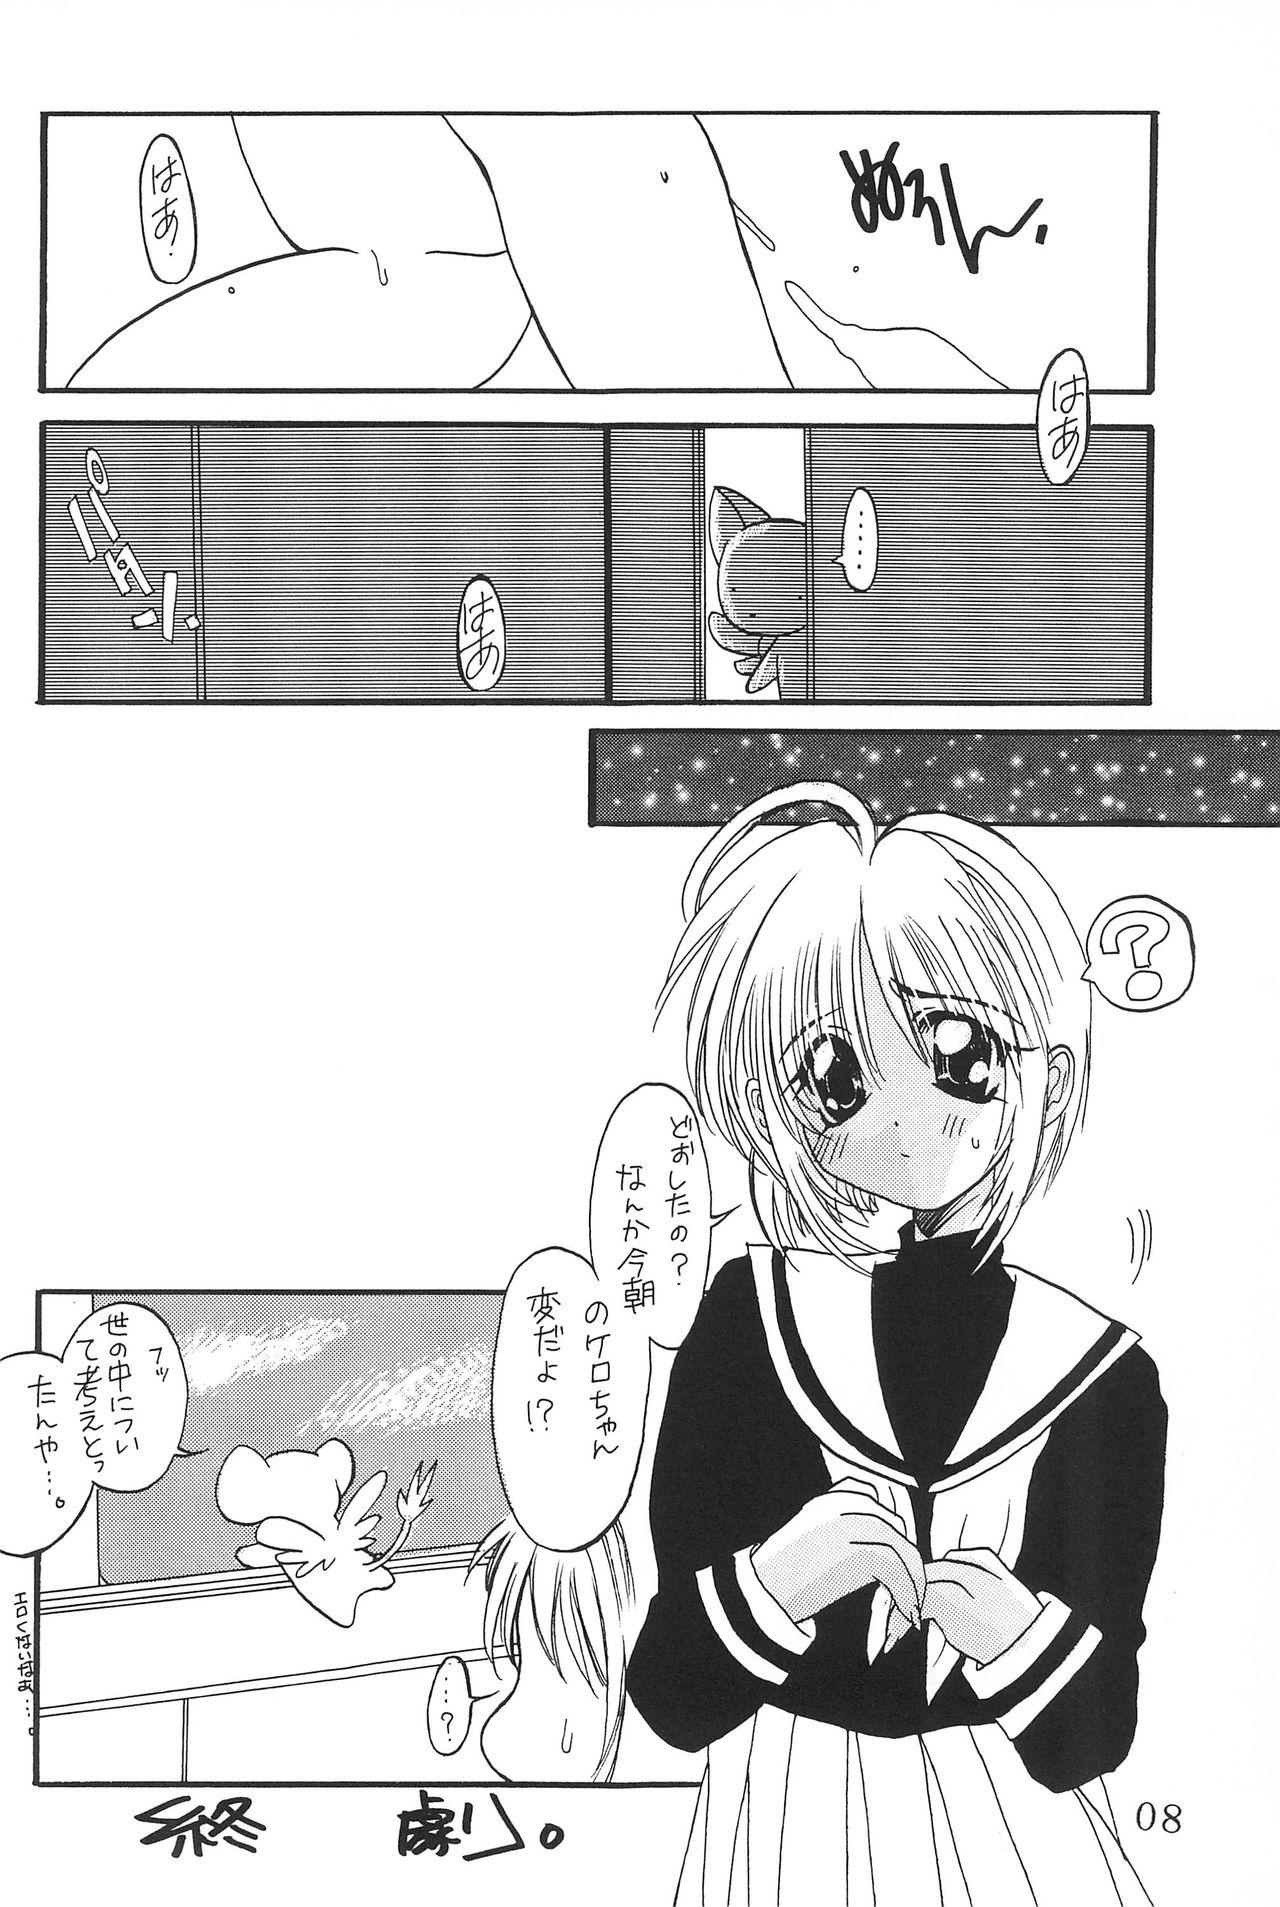 Vagina Watashi no Kare wa Sushi Shokunin - Cardcaptor sakura Bubble - Page 8